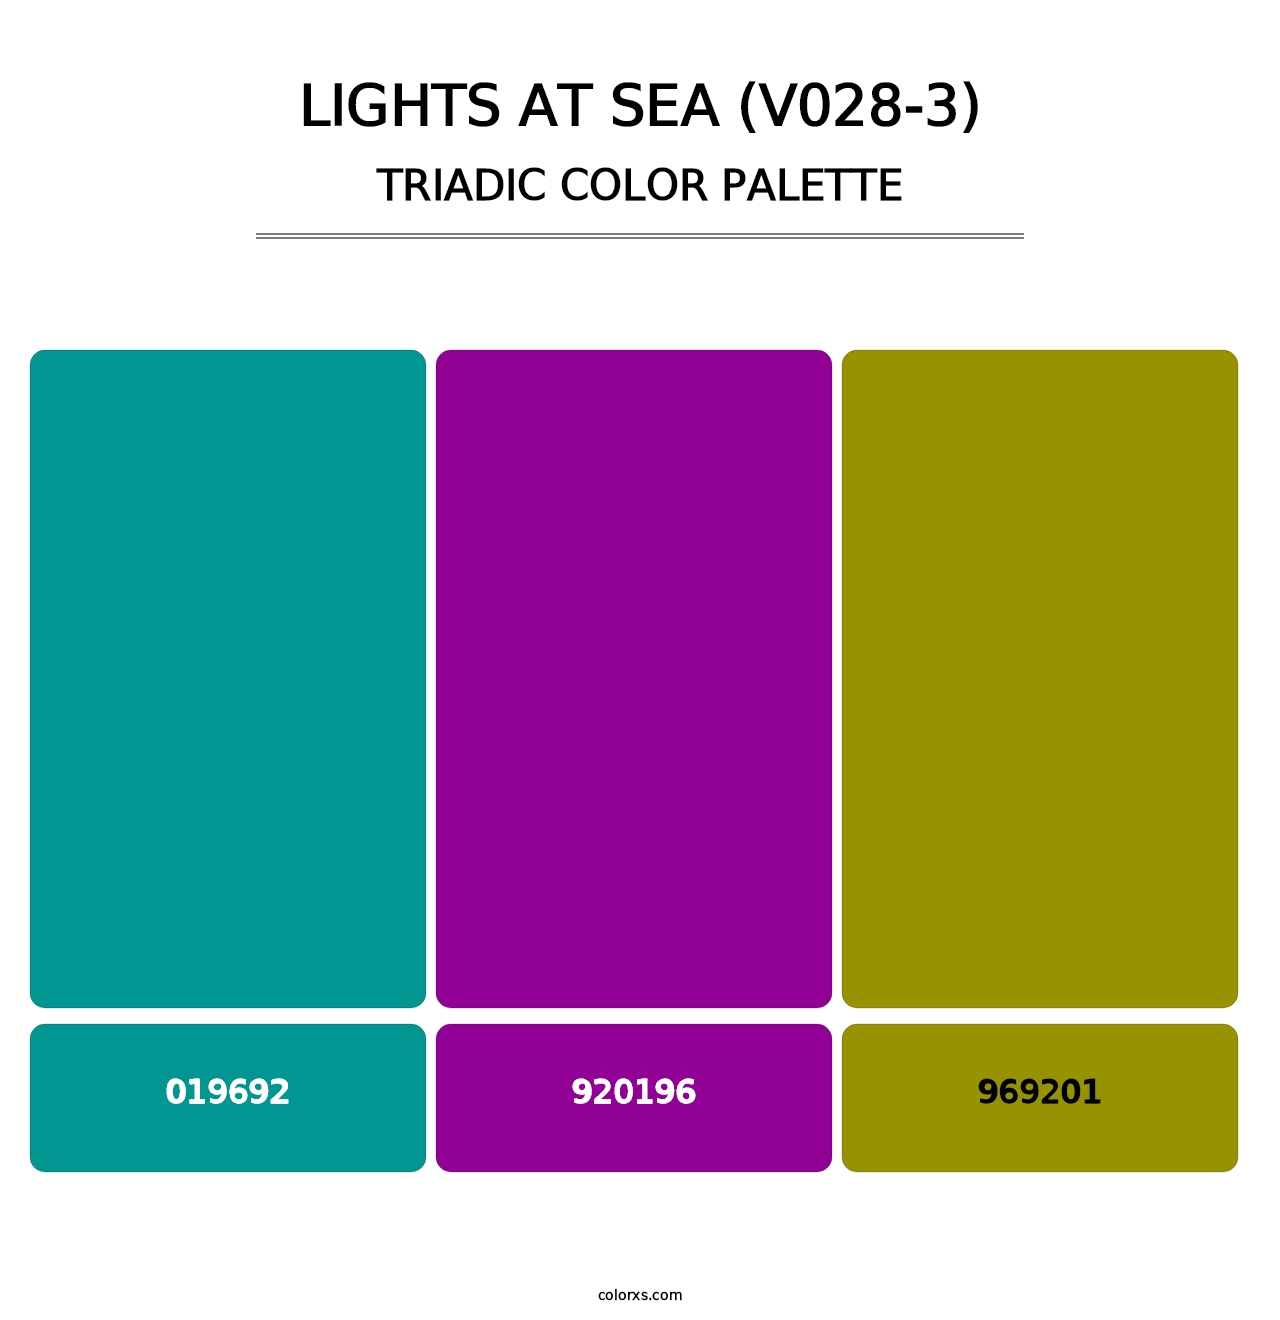 Lights at Sea (V028-3) - Triadic Color Palette